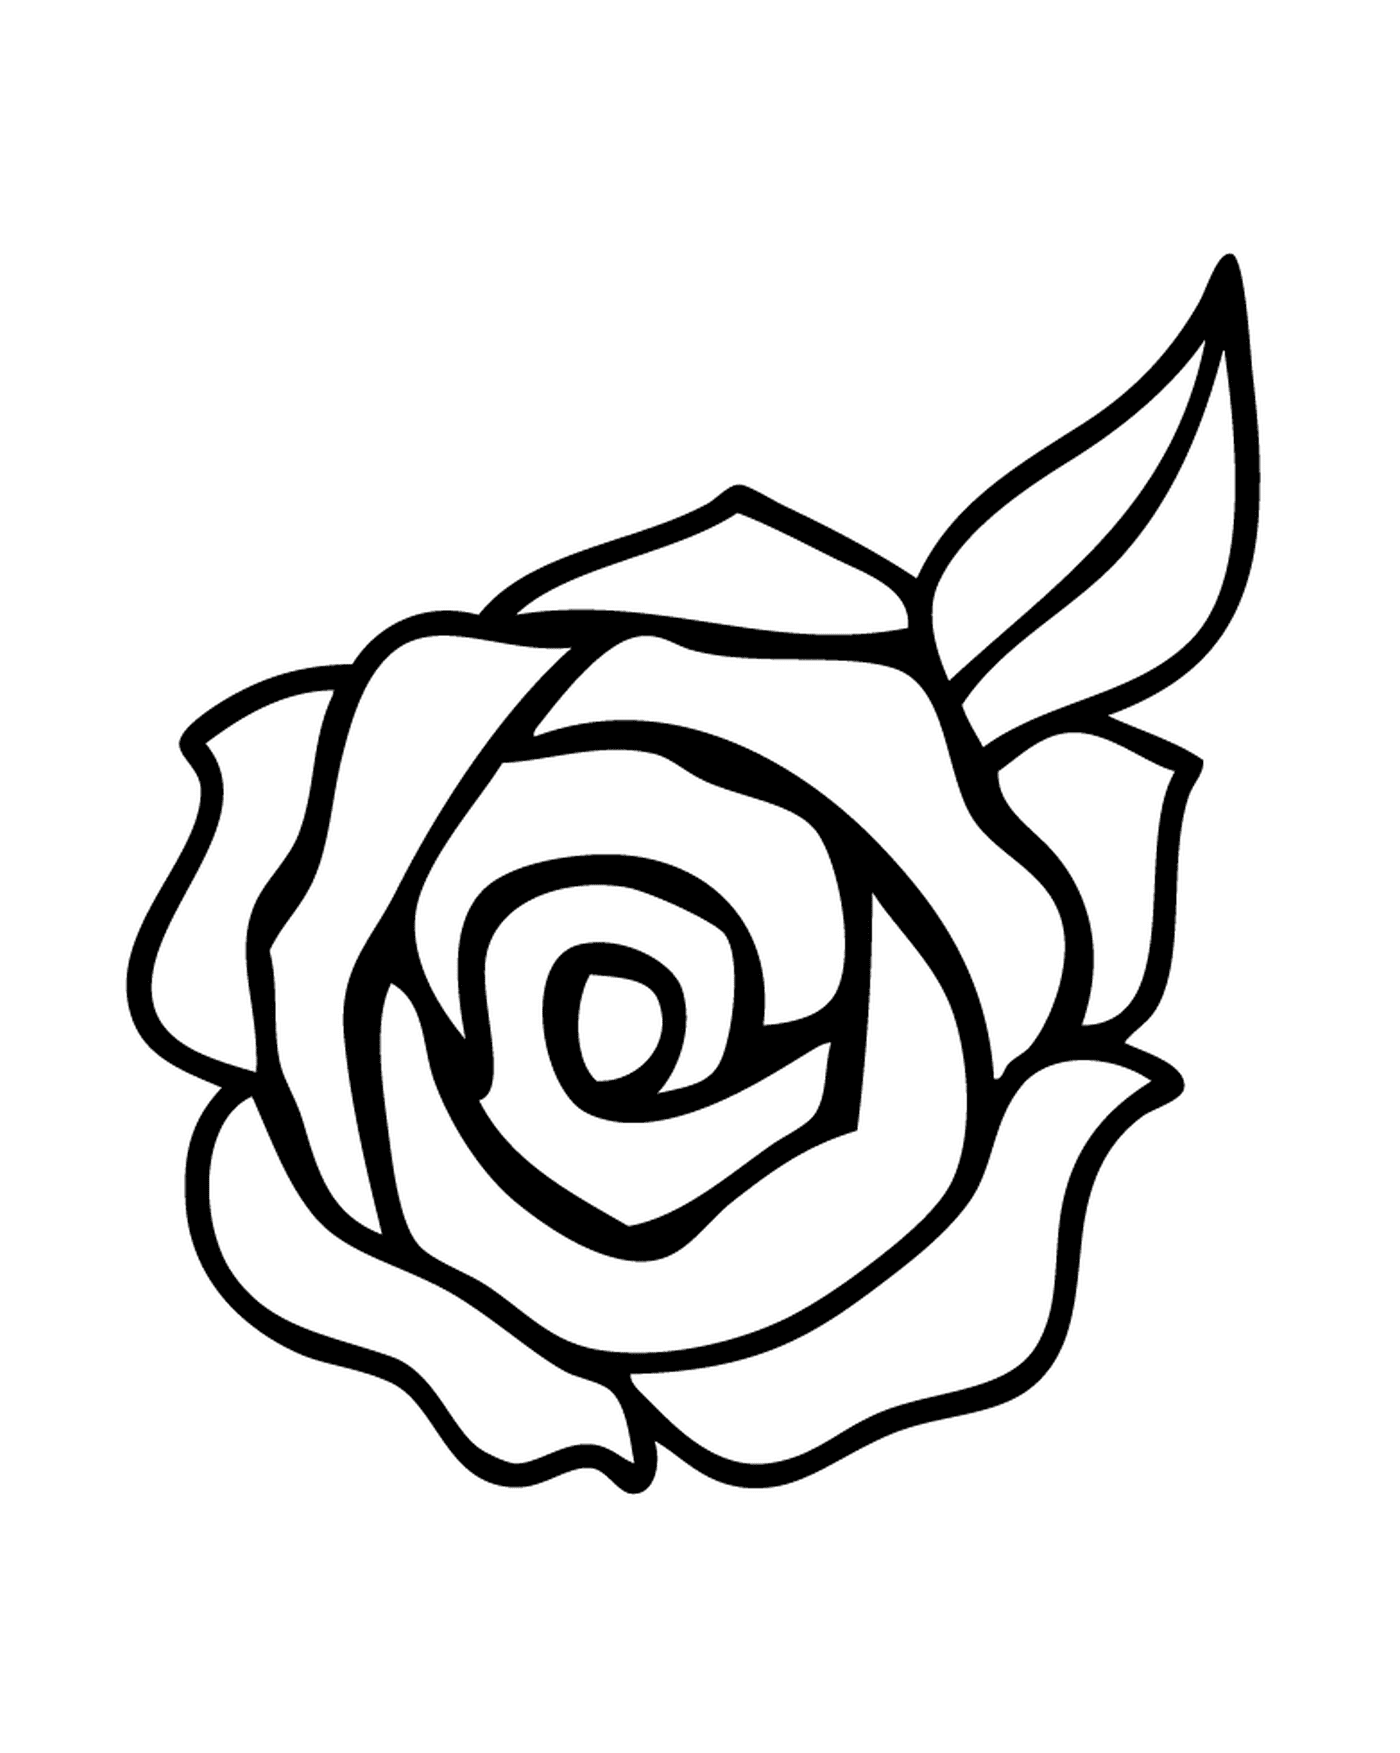  Rose eleganti al bouquet 